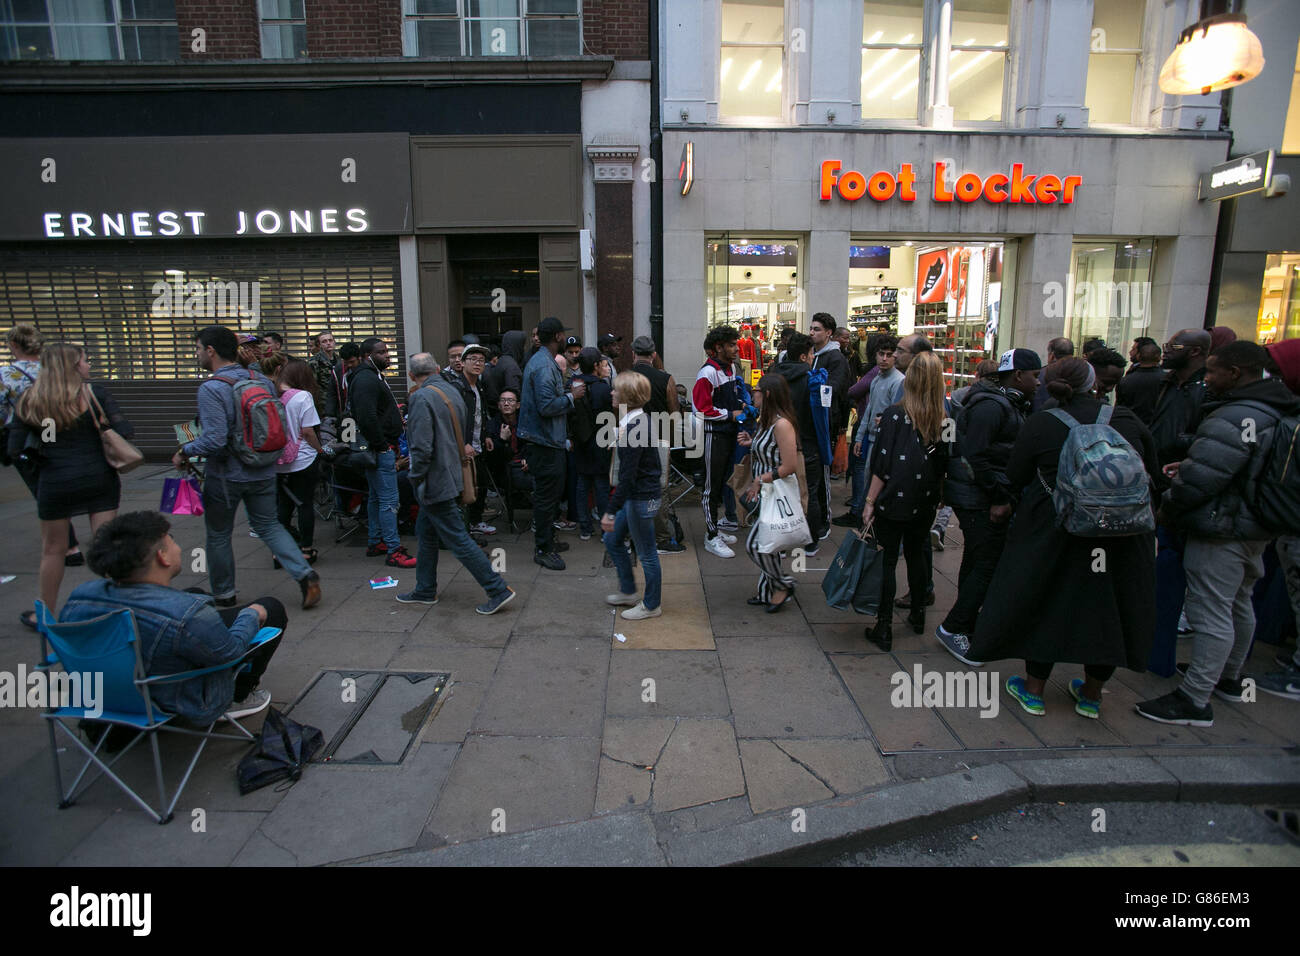 Des gens font la queue devant un magasin foot Locker à Oxford Street,  Londres, en attendant la nouvelle sortie de l'Adidas Yeezy Boost 350, conçu  par Kanye West qui est sorti samedi